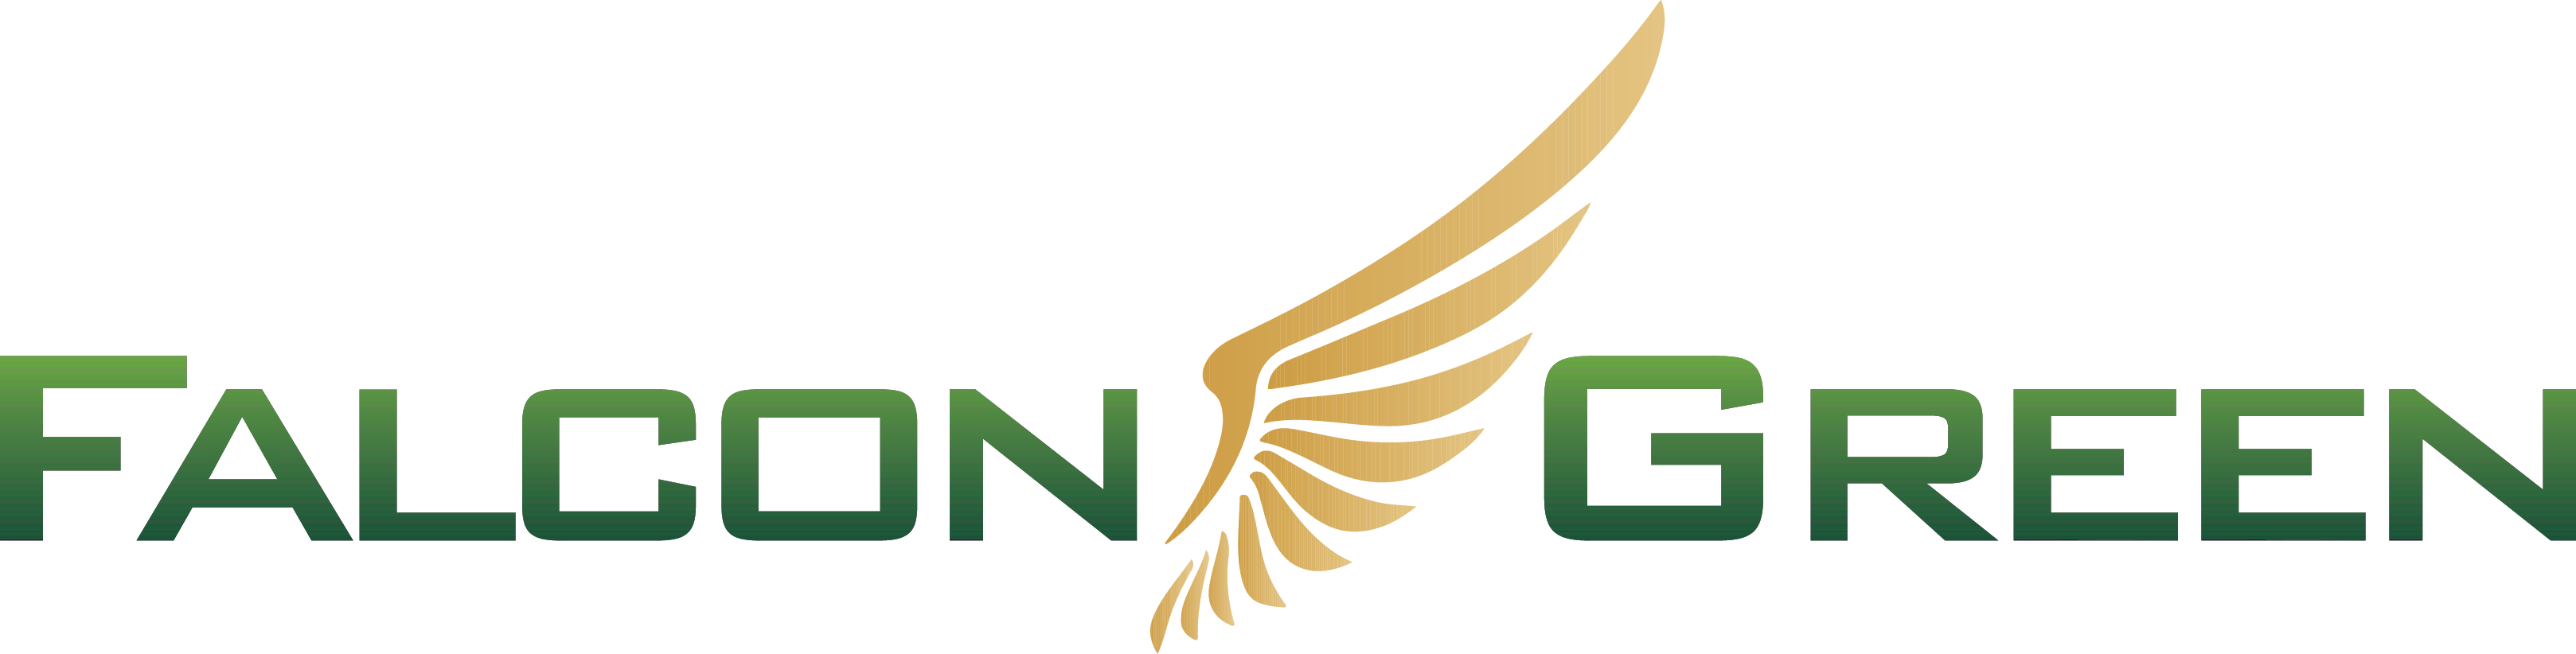 Falcon Green Logo